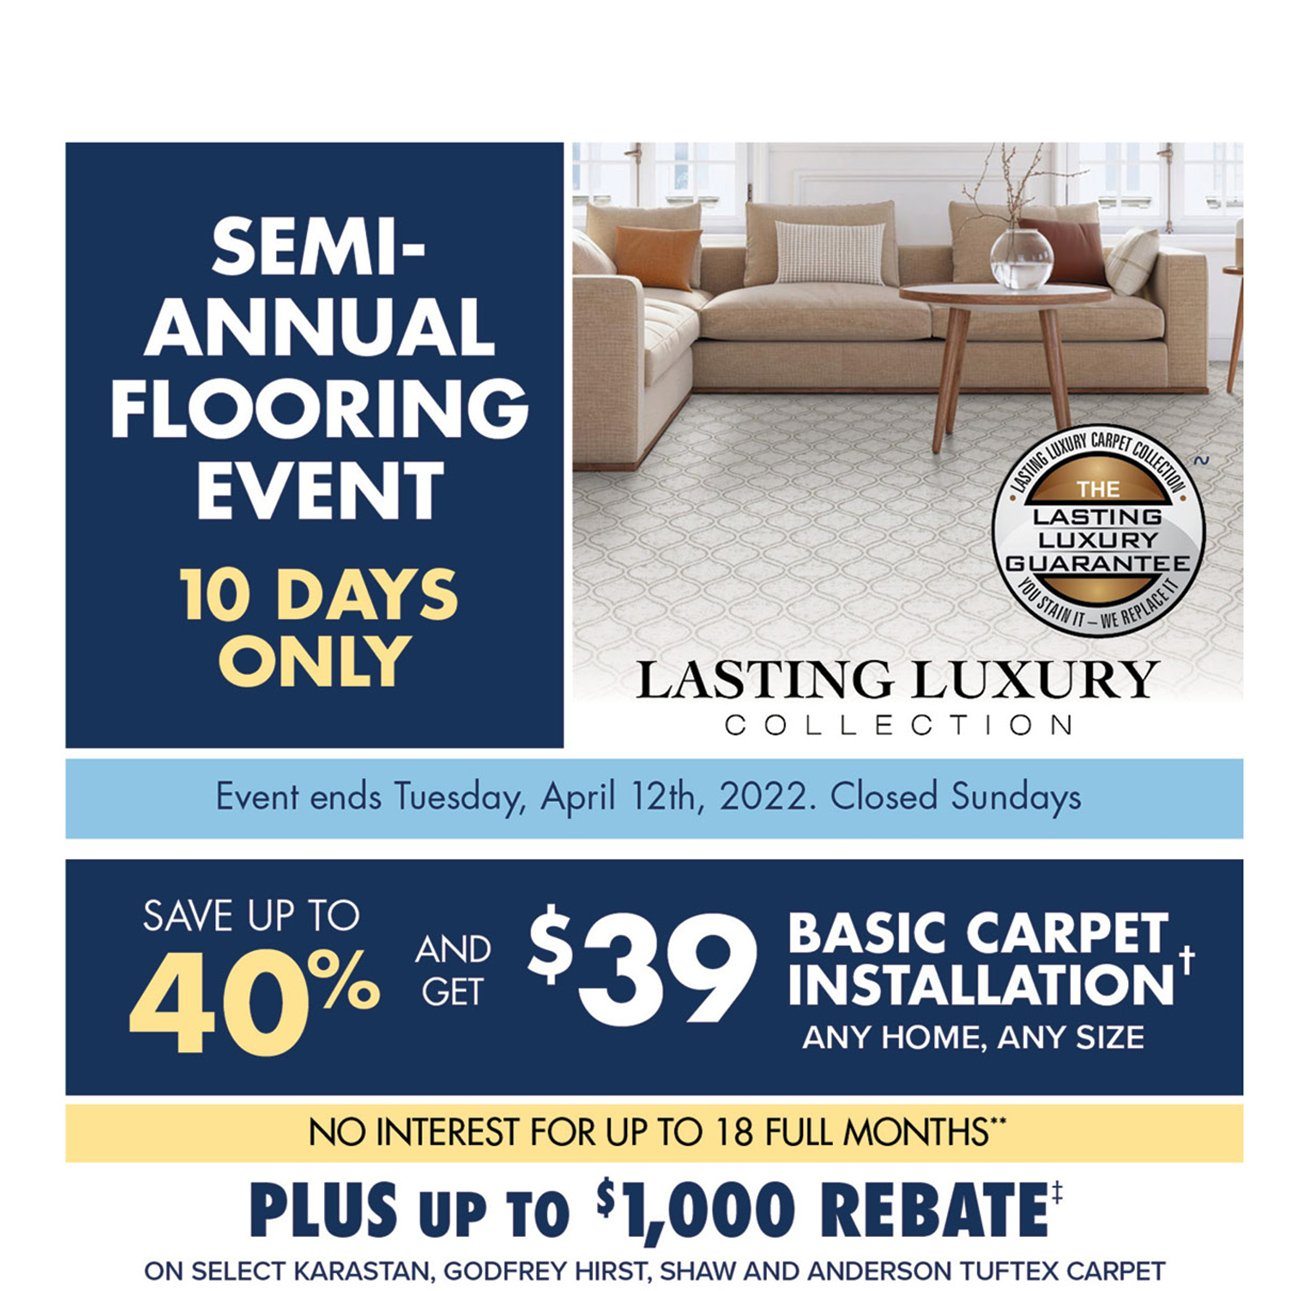 Semi-annual-flooring-event